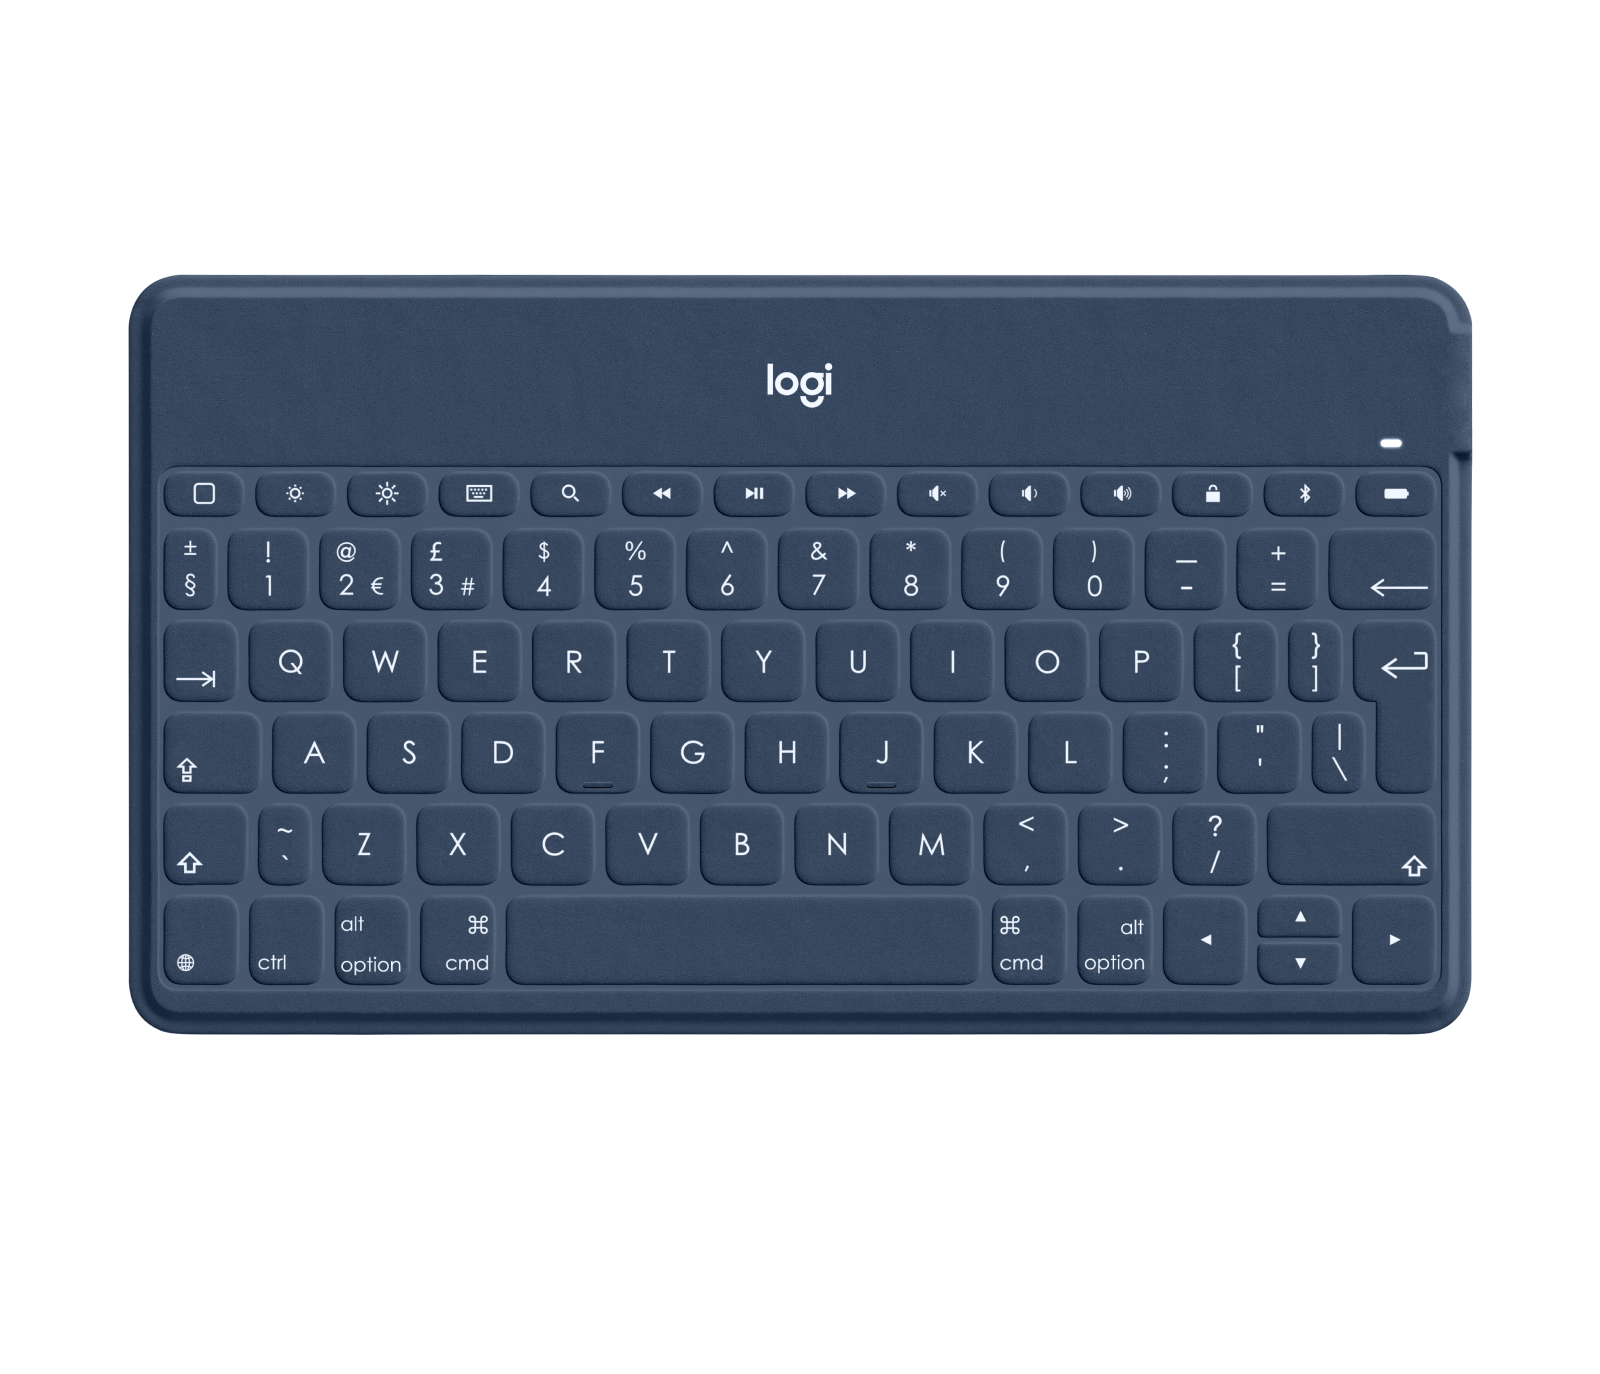 Keys-to-Go Portable Wireless Keyboard for Logitech Switzerland